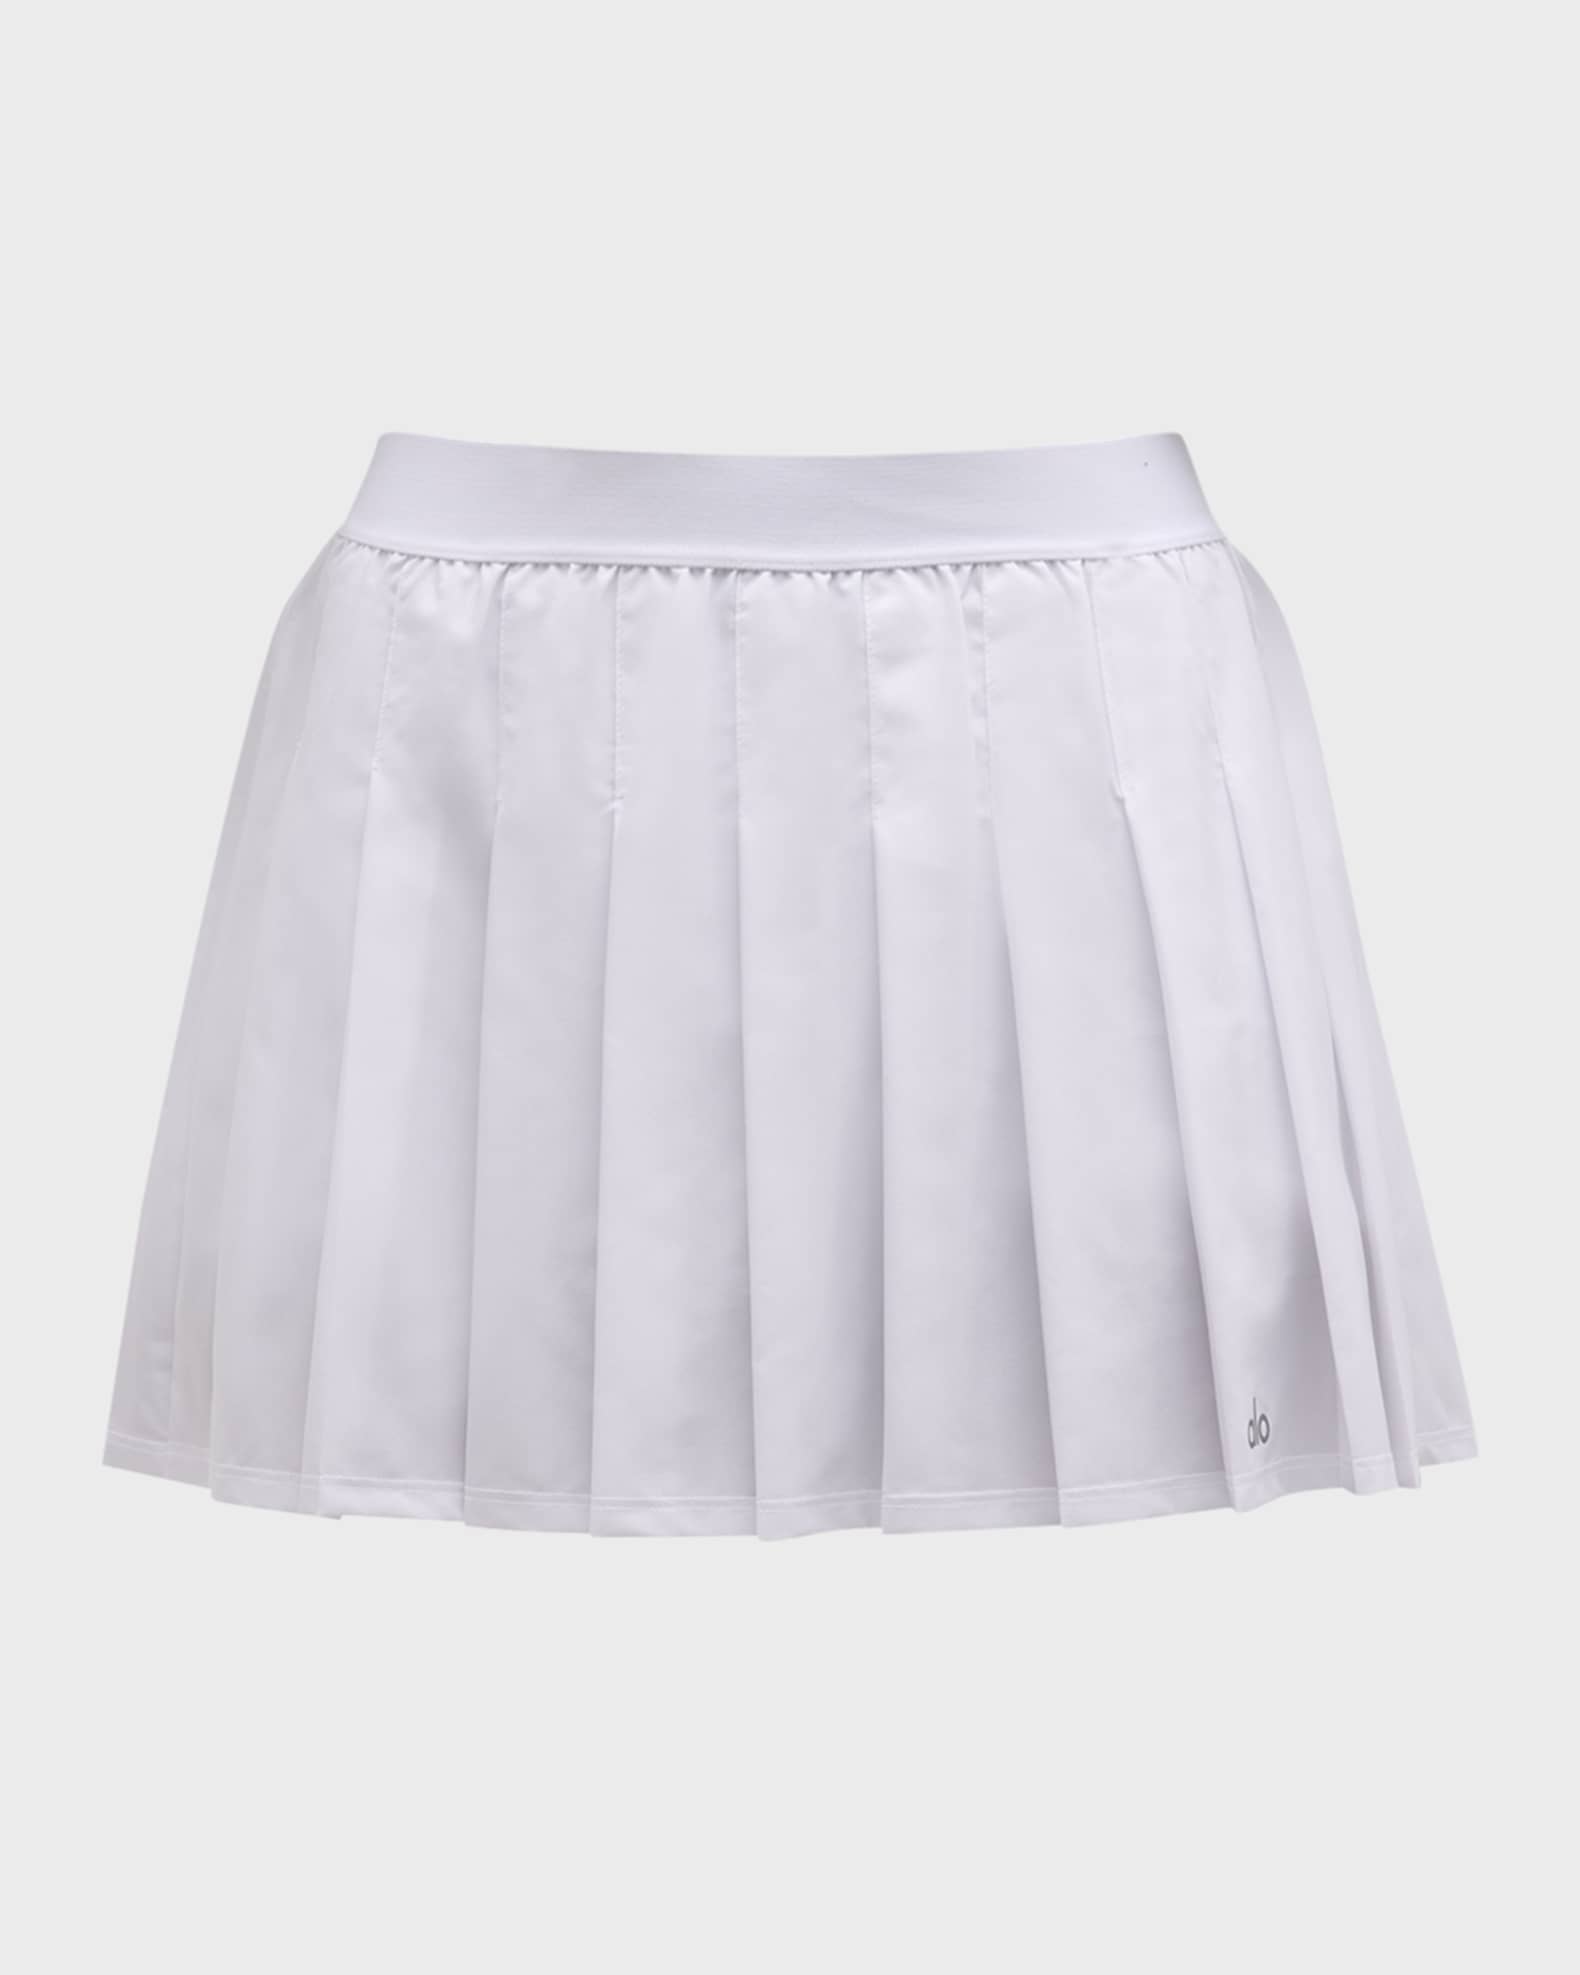 PSA: Alo's Varsity Tennis Skirt Is Back In Stock (But Not For Long)